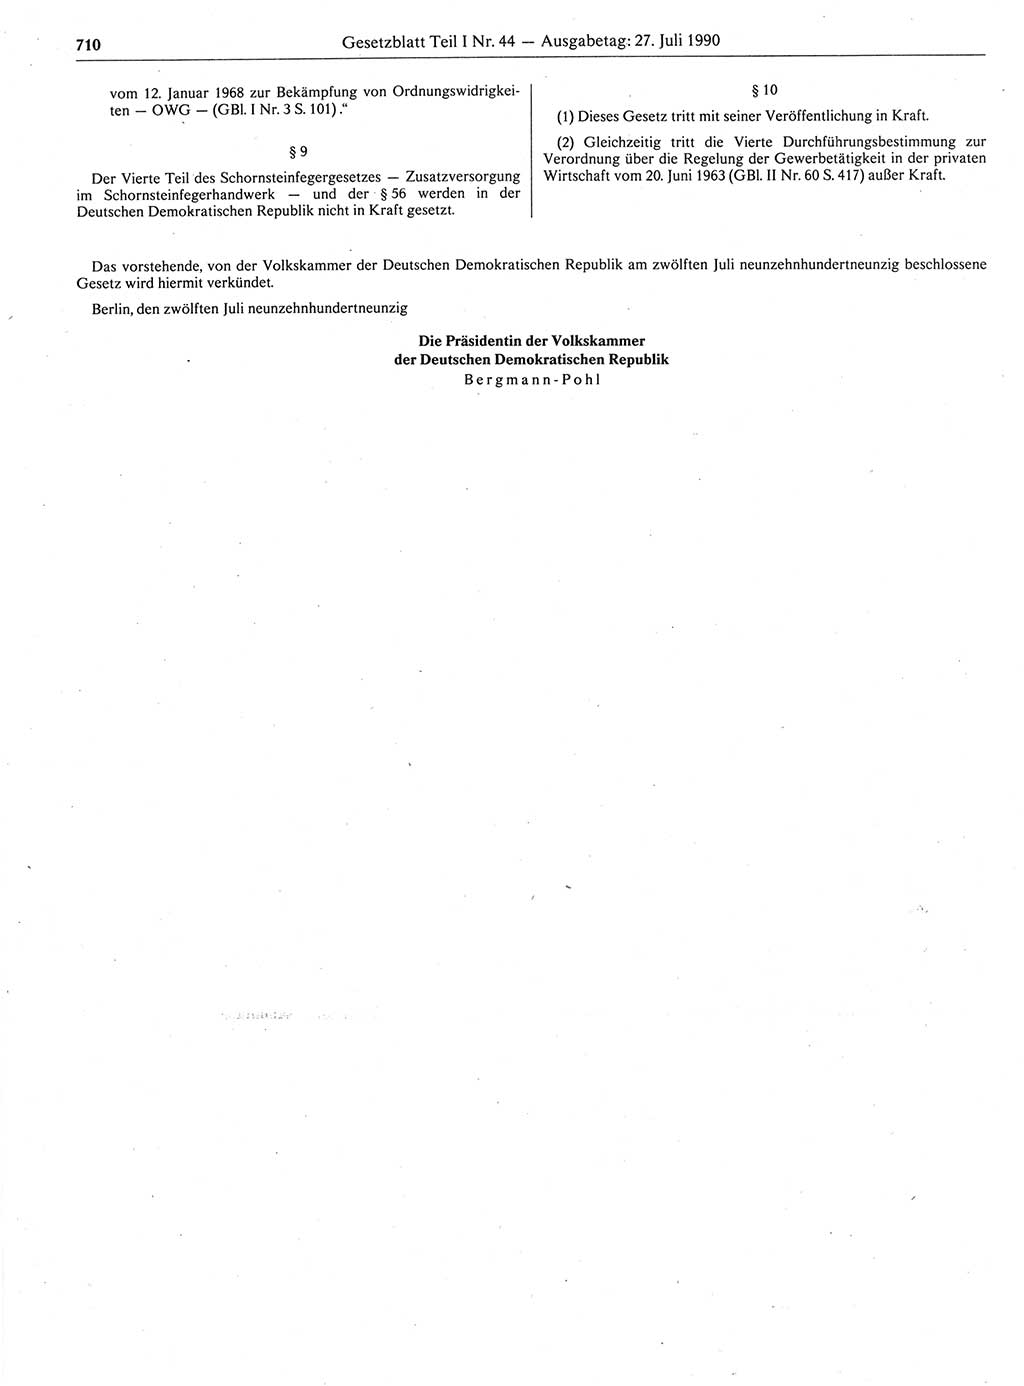 Gesetzblatt (GBl.) der Deutschen Demokratischen Republik (DDR) Teil Ⅰ 1990, Seite 710 (GBl. DDR Ⅰ 1990, S. 710)